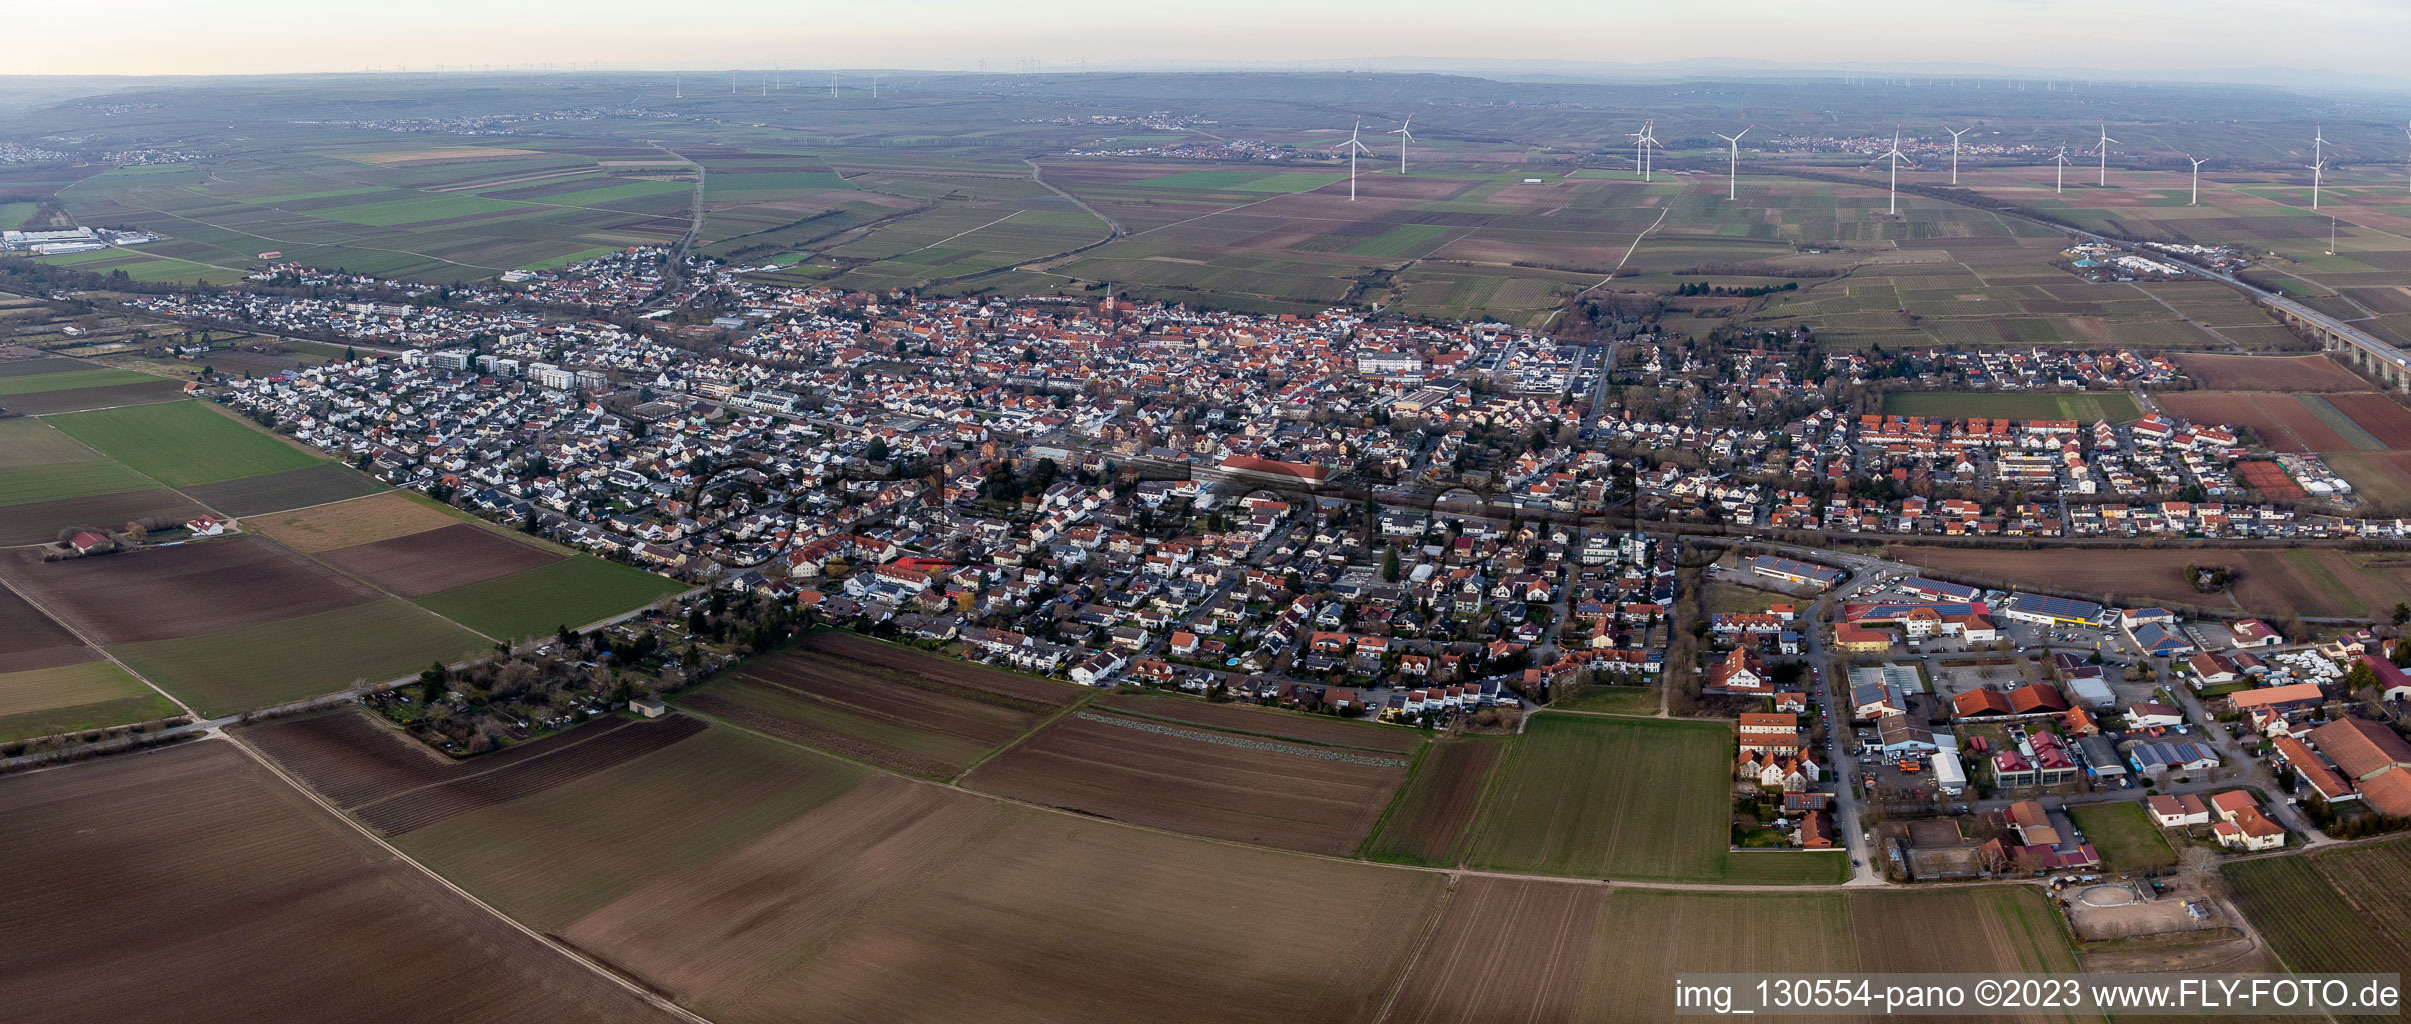 Ortsteil Pfeddersheim in Worms im Bundesland Rheinland-Pfalz, Deutschland aus der Luft